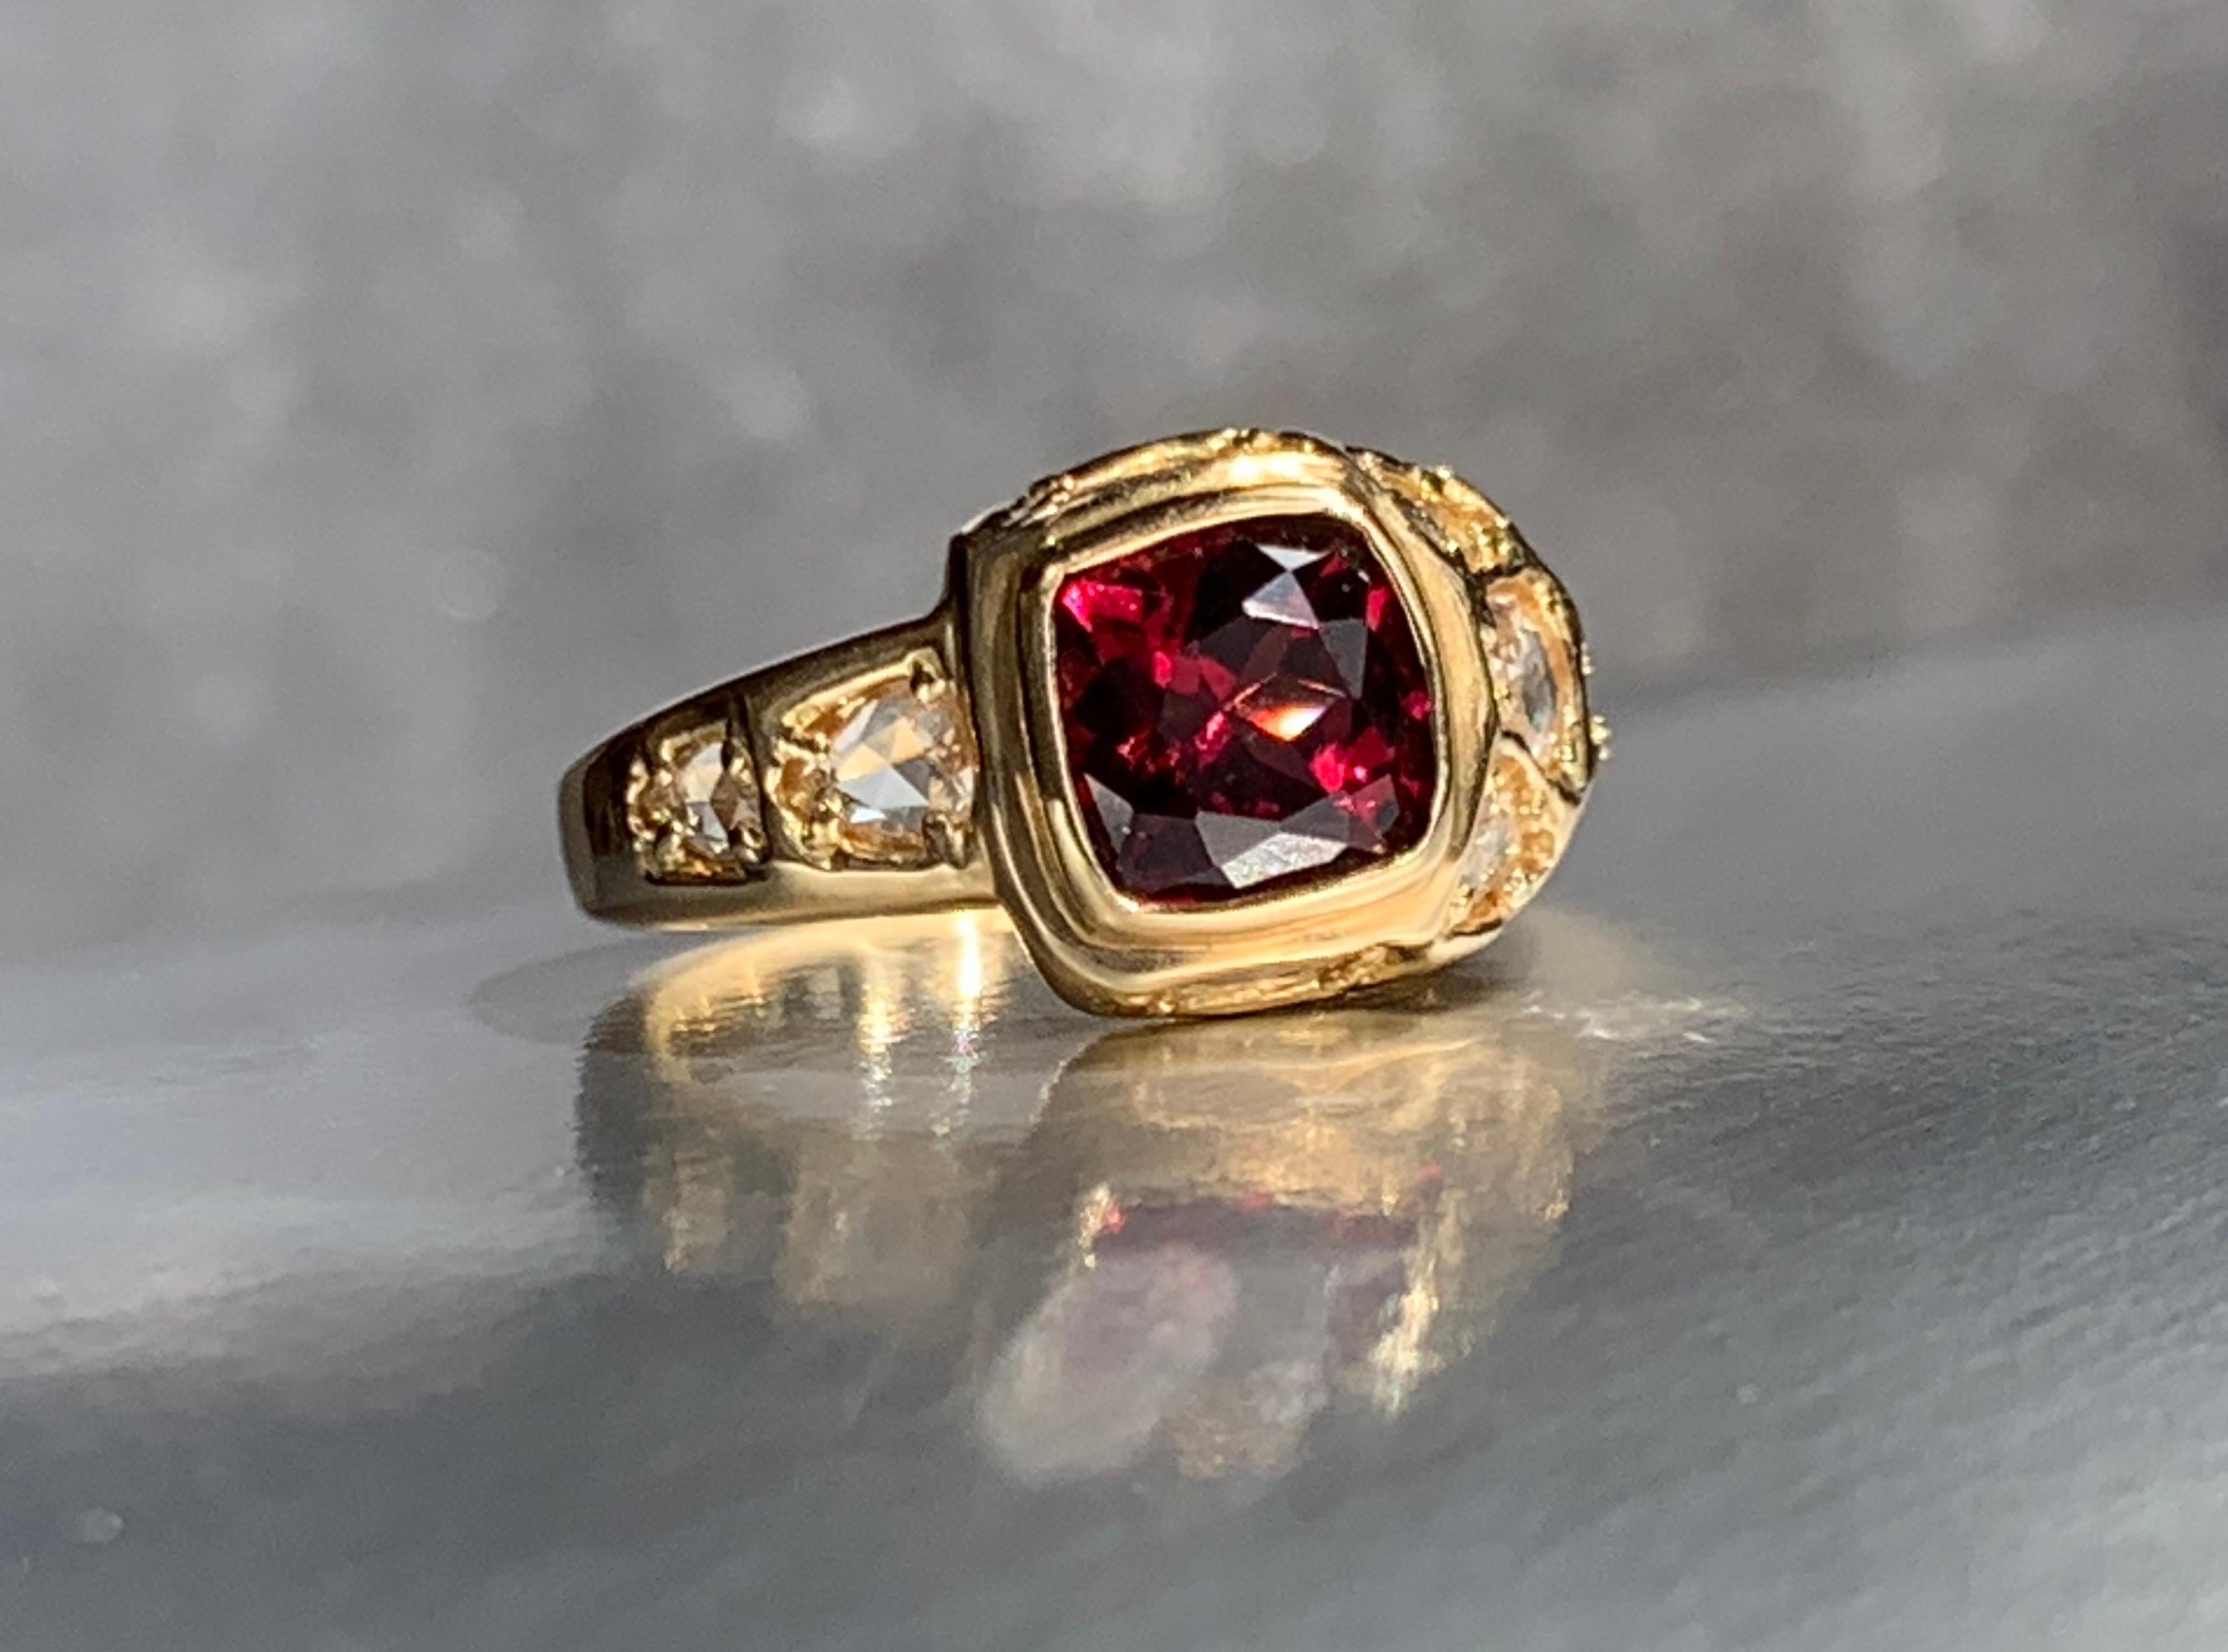 Der einzigartige Ring Garnet Treasure ist von zeitloser Sensibilität. In die faszinierende Komposition sind feine weiße Diamanten im Rosenschliff eingearbeitet. Das asymmetrische Design und die neuartige Platzierung der Diamanten sorgen für